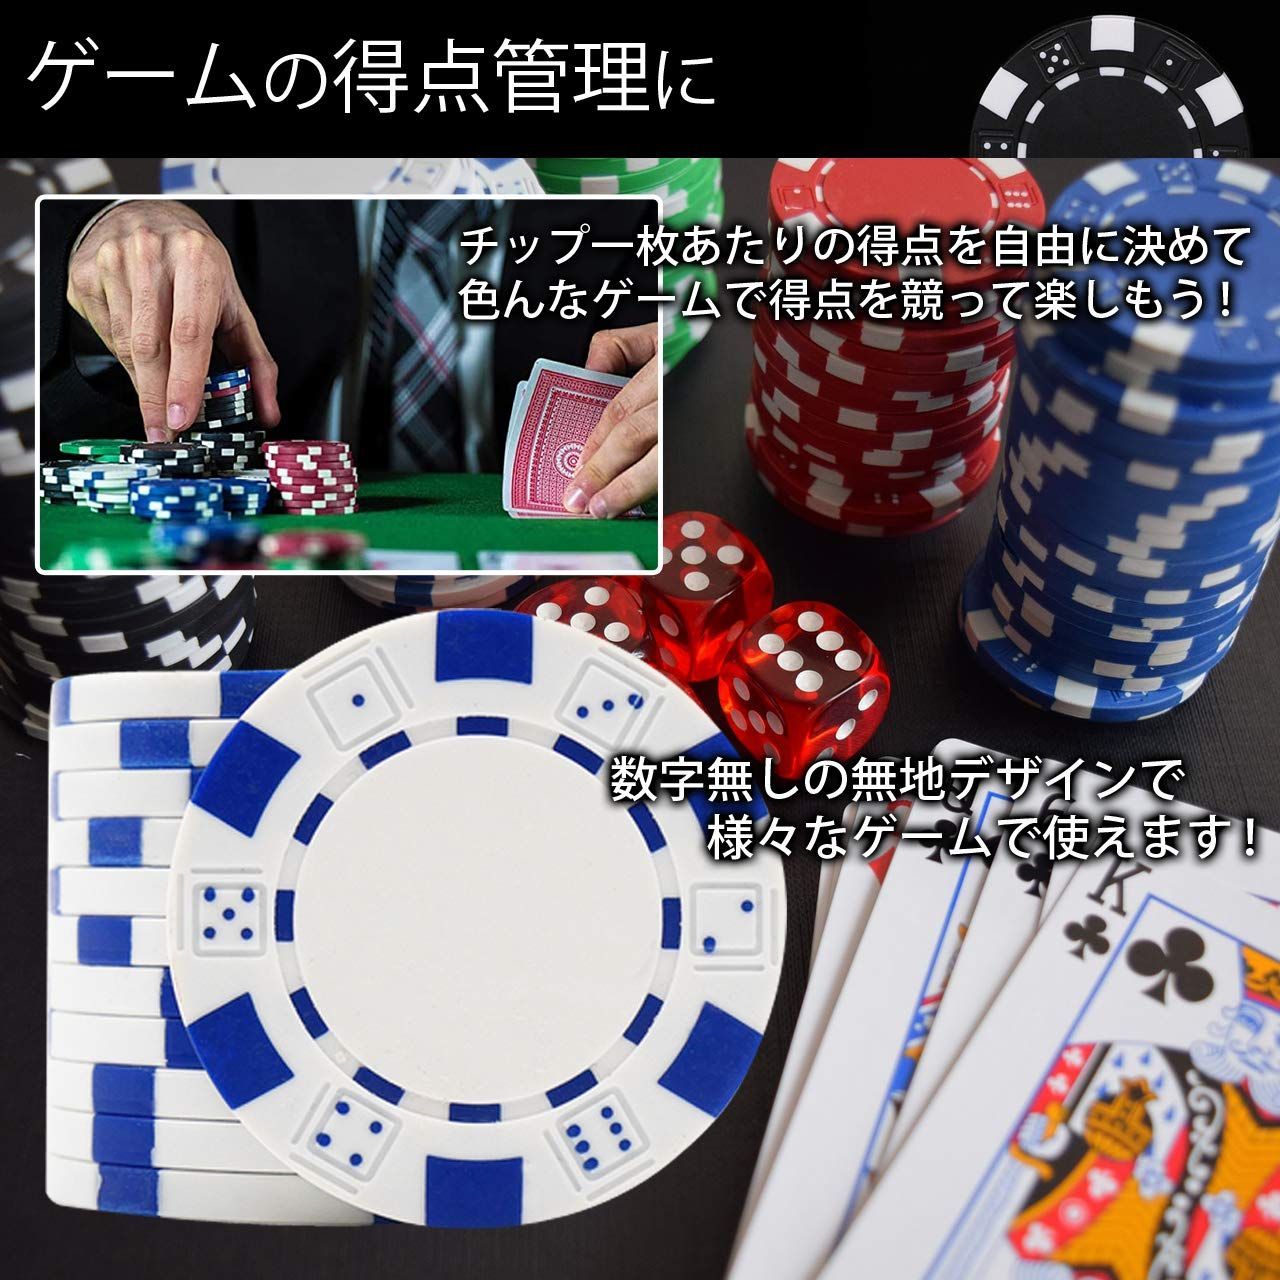 Poker table ポーカーテーブル 本格的 チップ大量 カジノ用品 - 東京都 